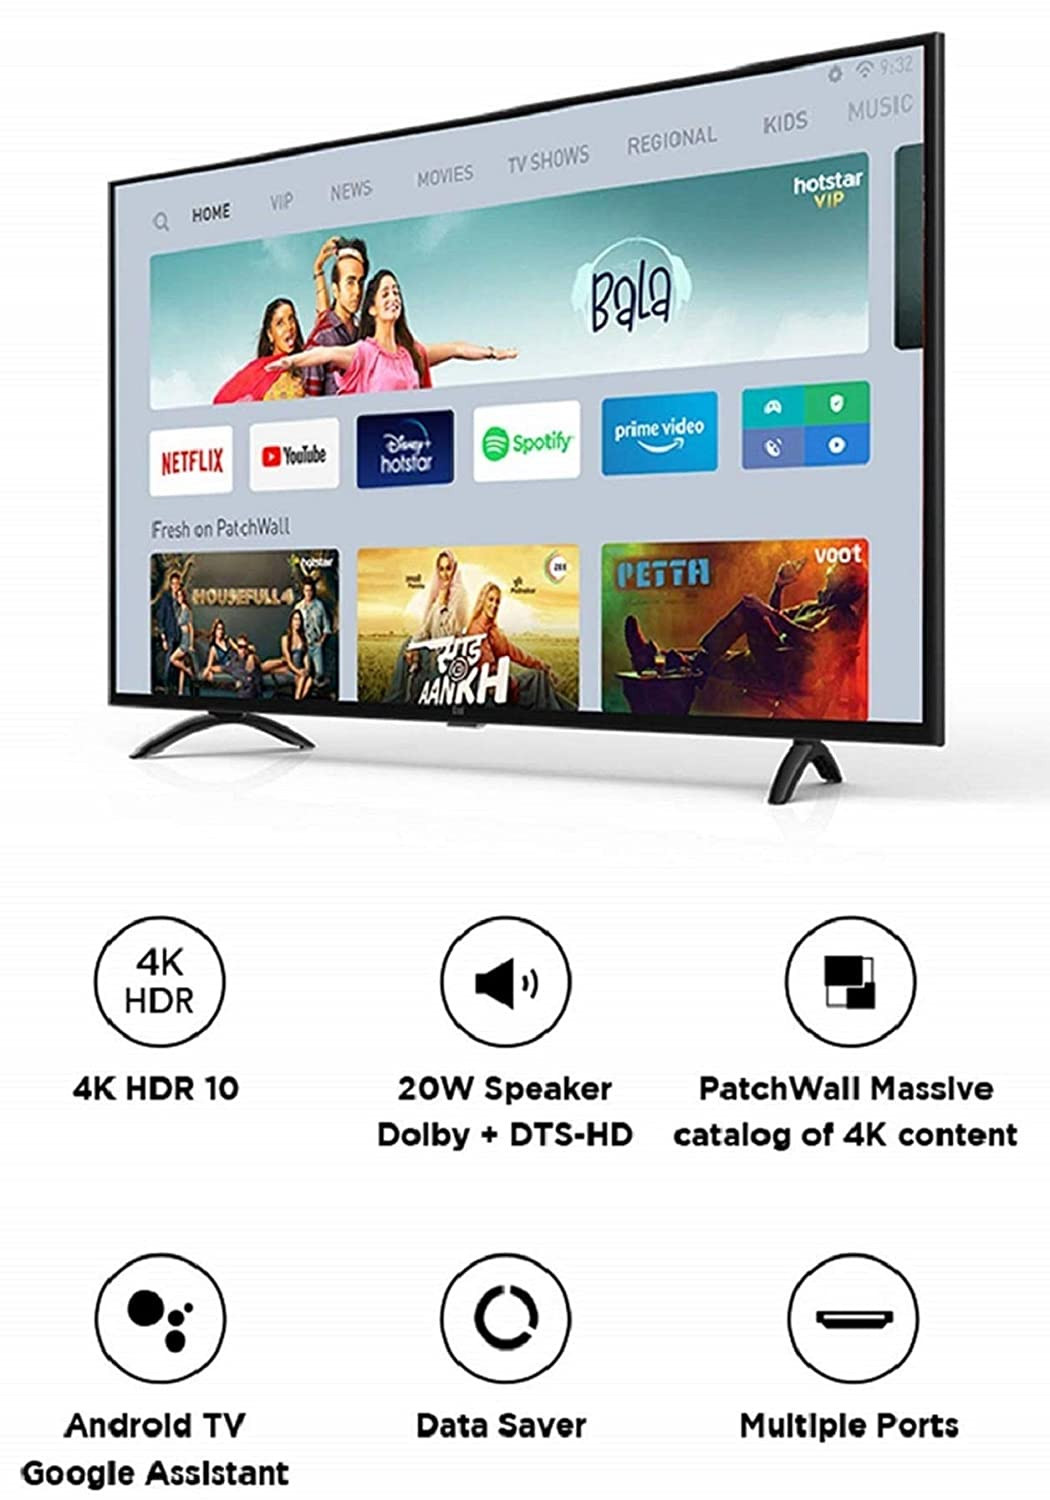 Mi TV 4X 43 - 4K HDR Smart TV - Mi India